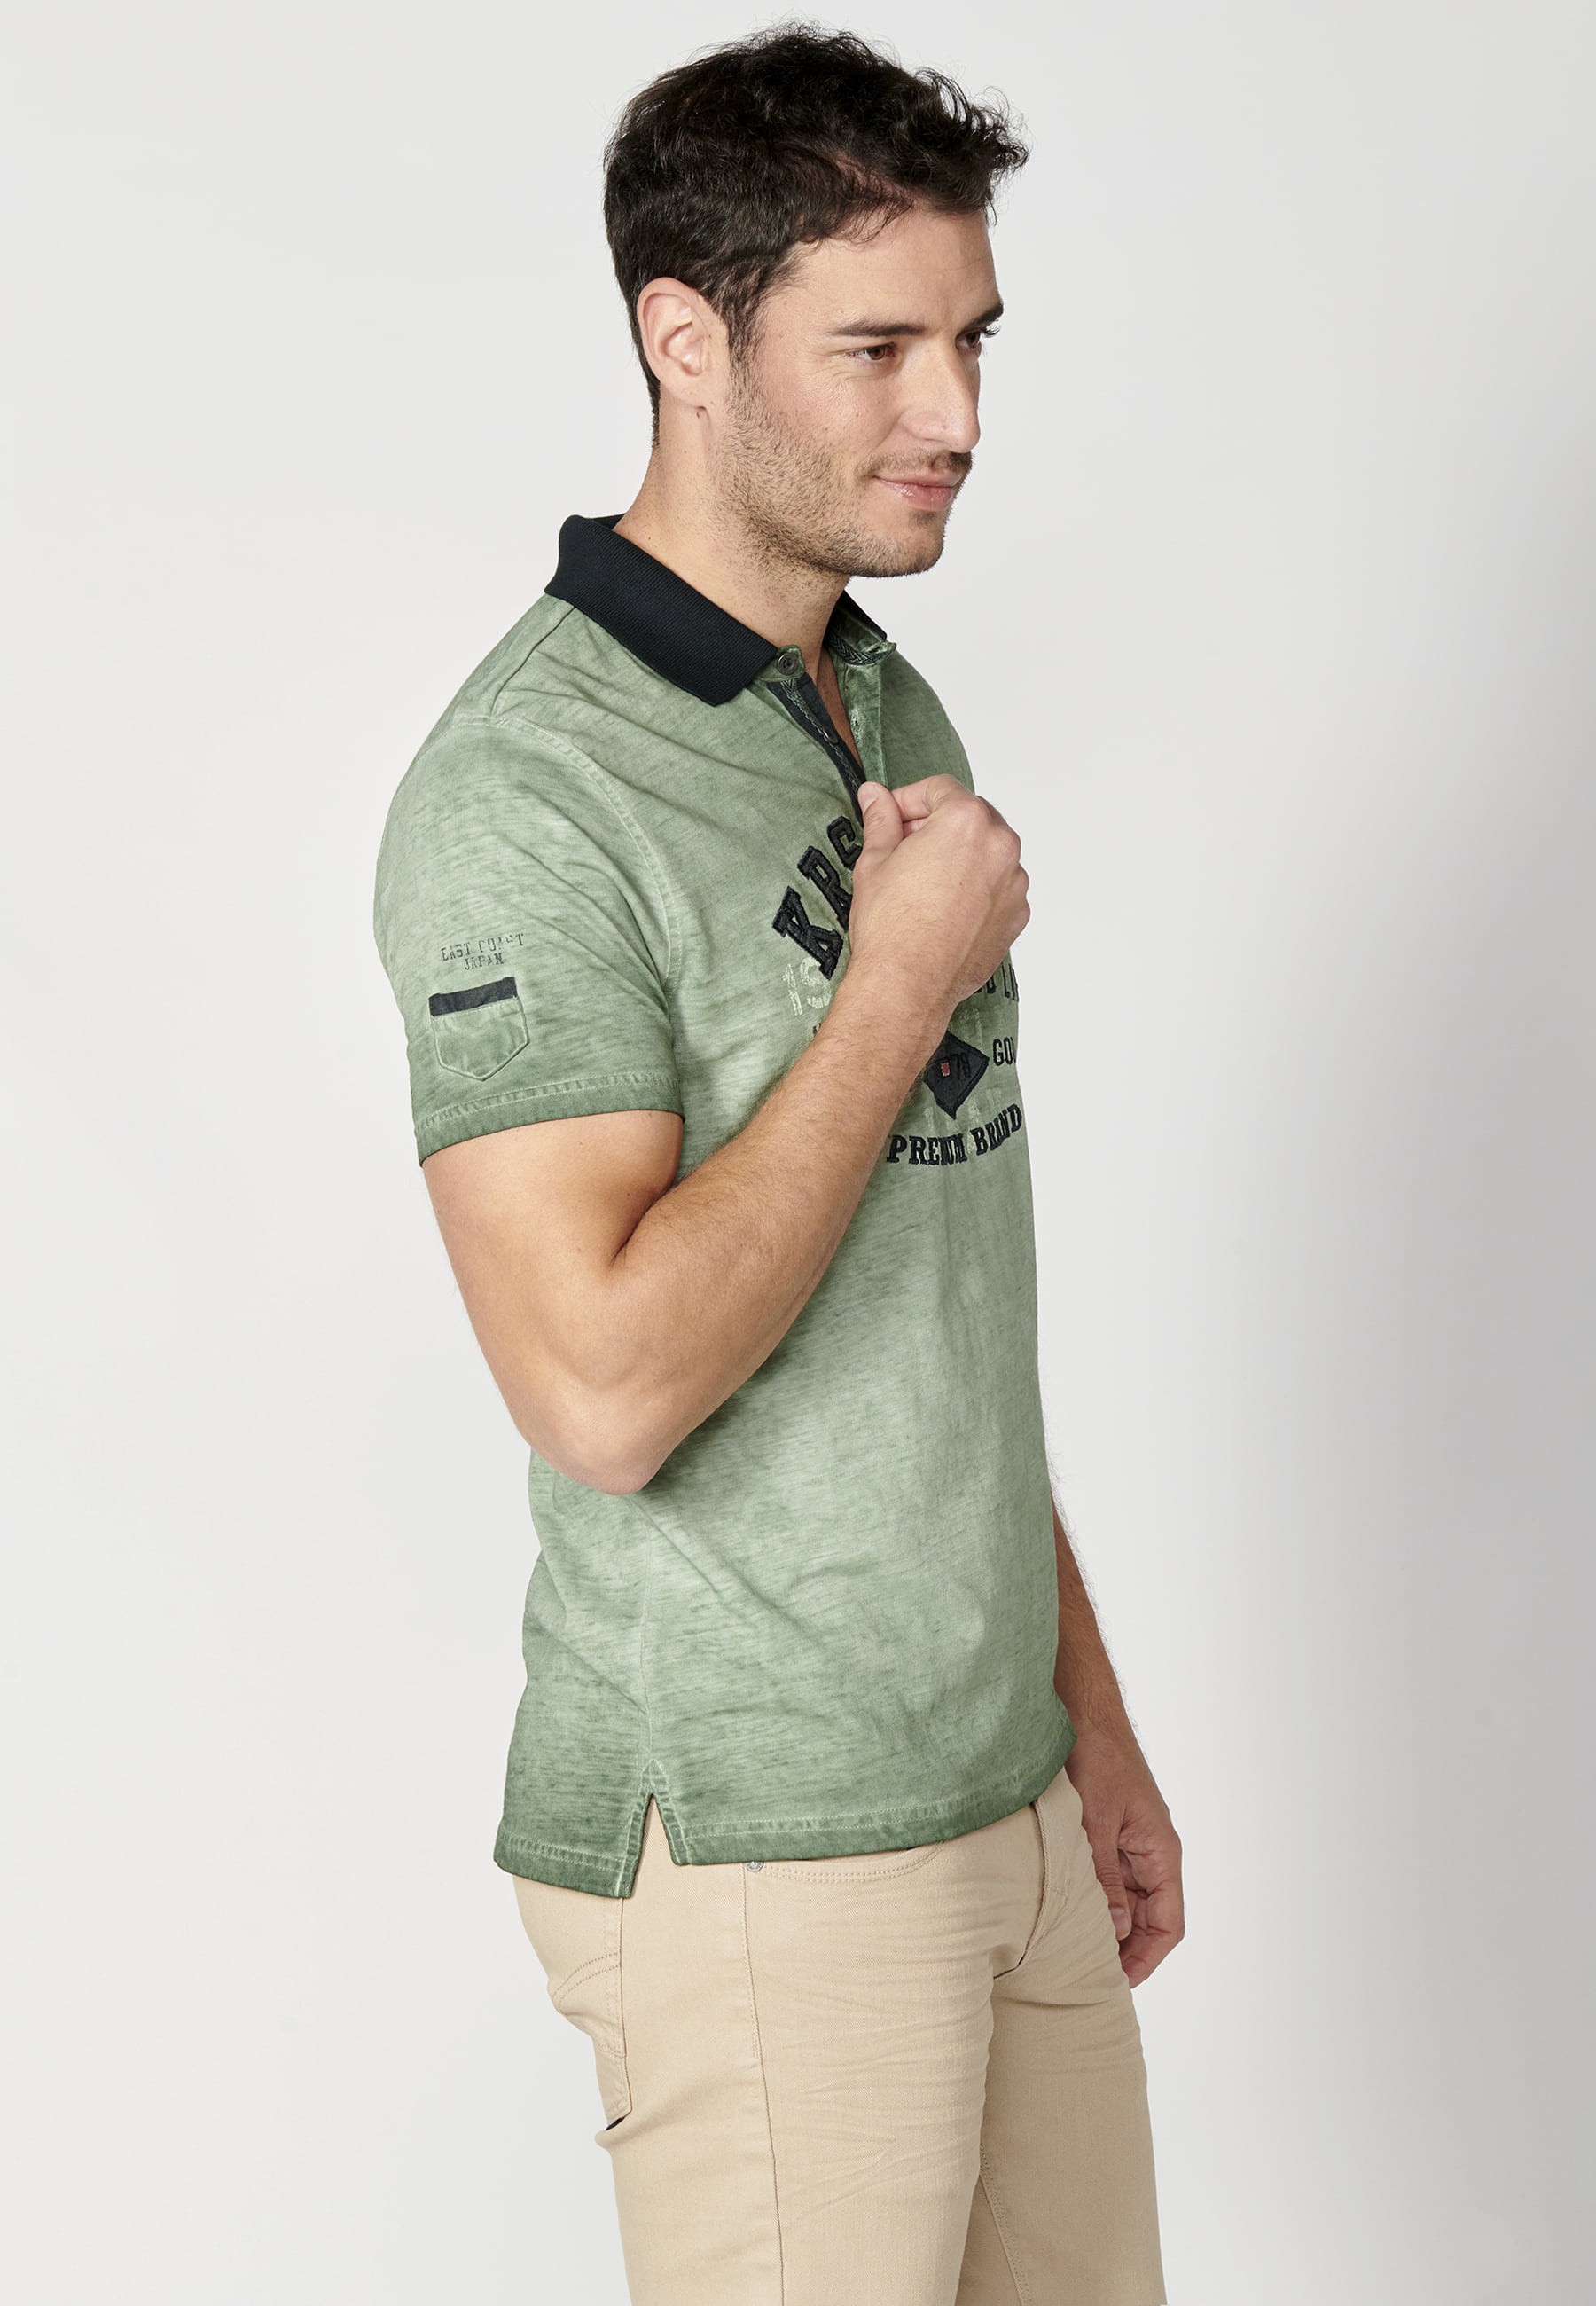 Khakifarbenes Kurzarm-Poloshirt aus Baumwolle mit Textdruck für Herren